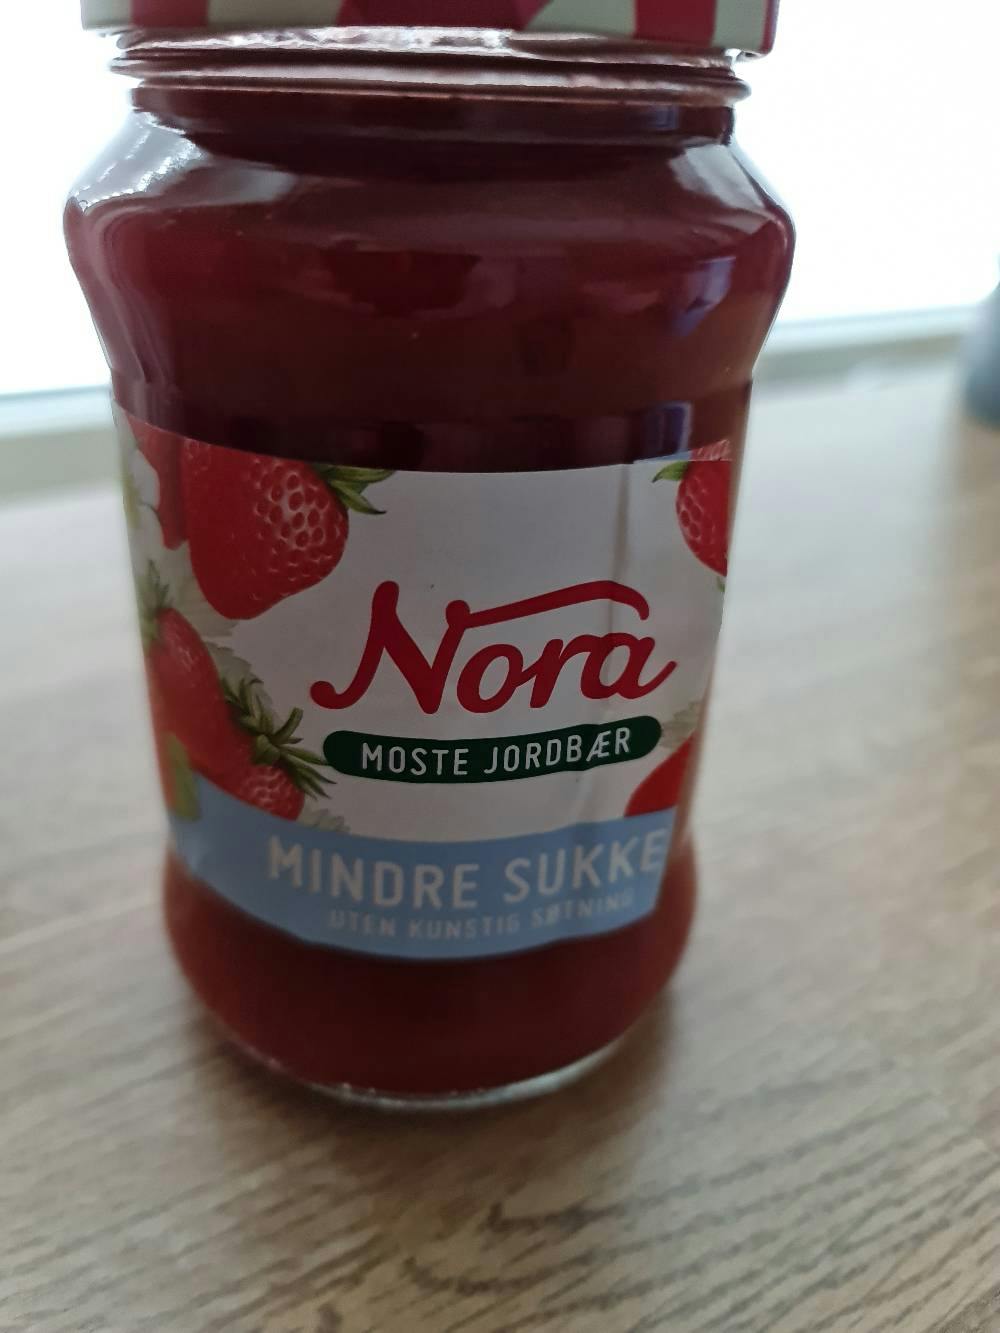 Moste jordbær mindre sukker, Nora